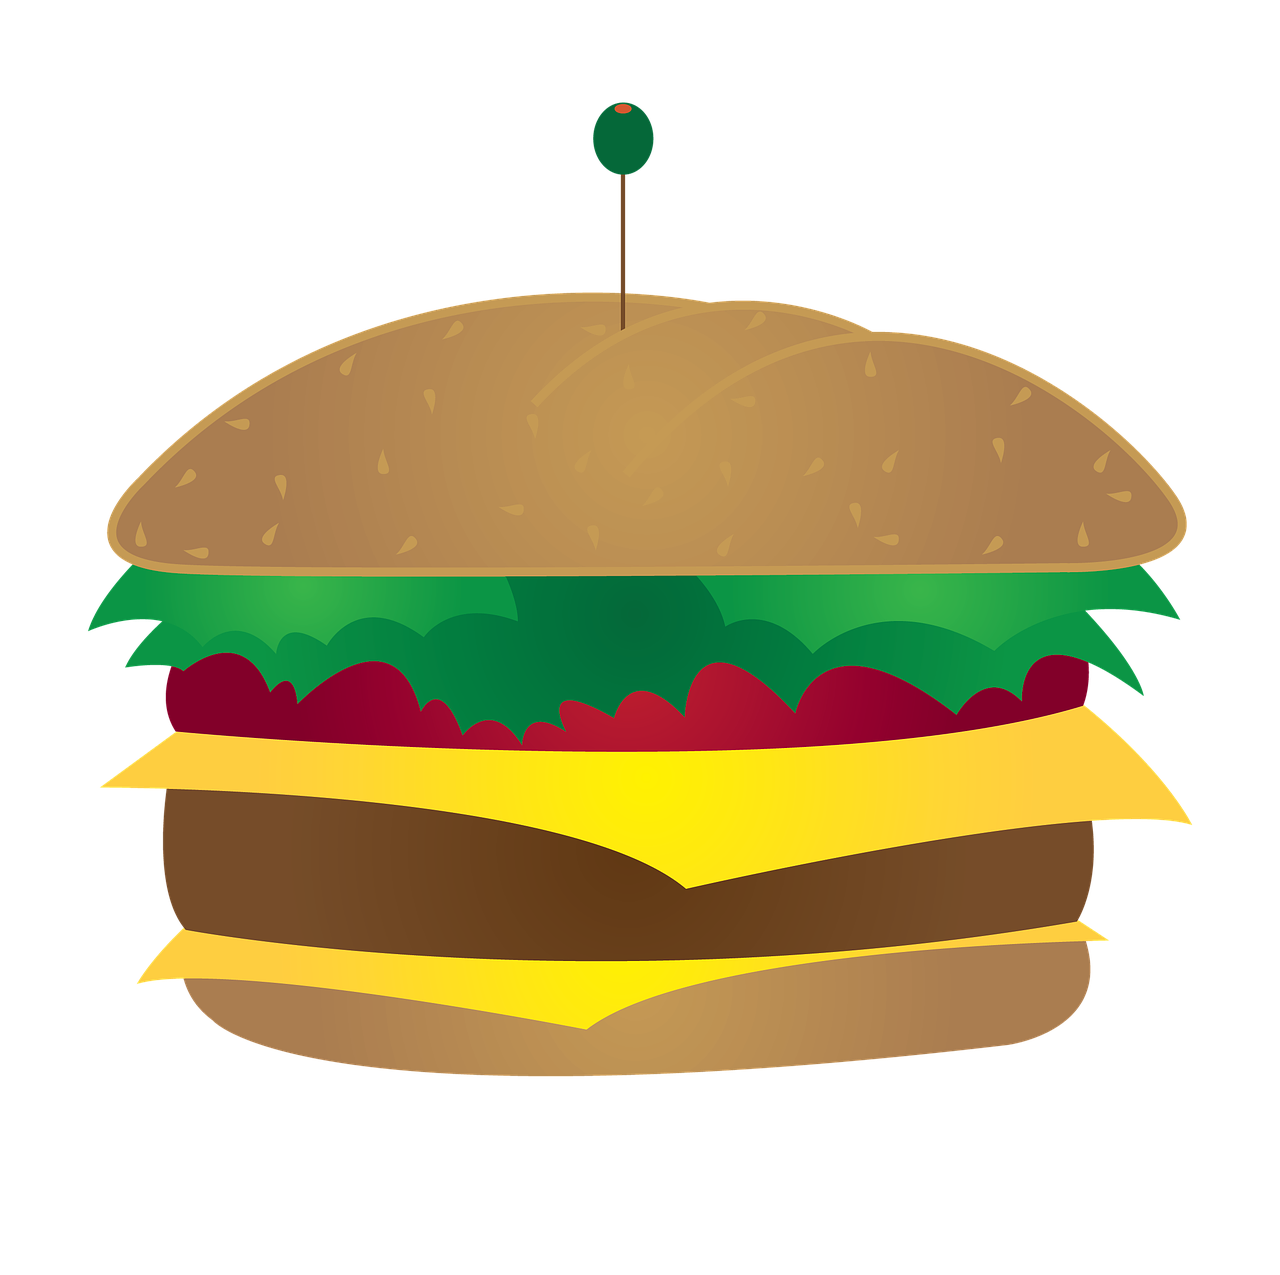 cheeseburger burger fastfood free photo